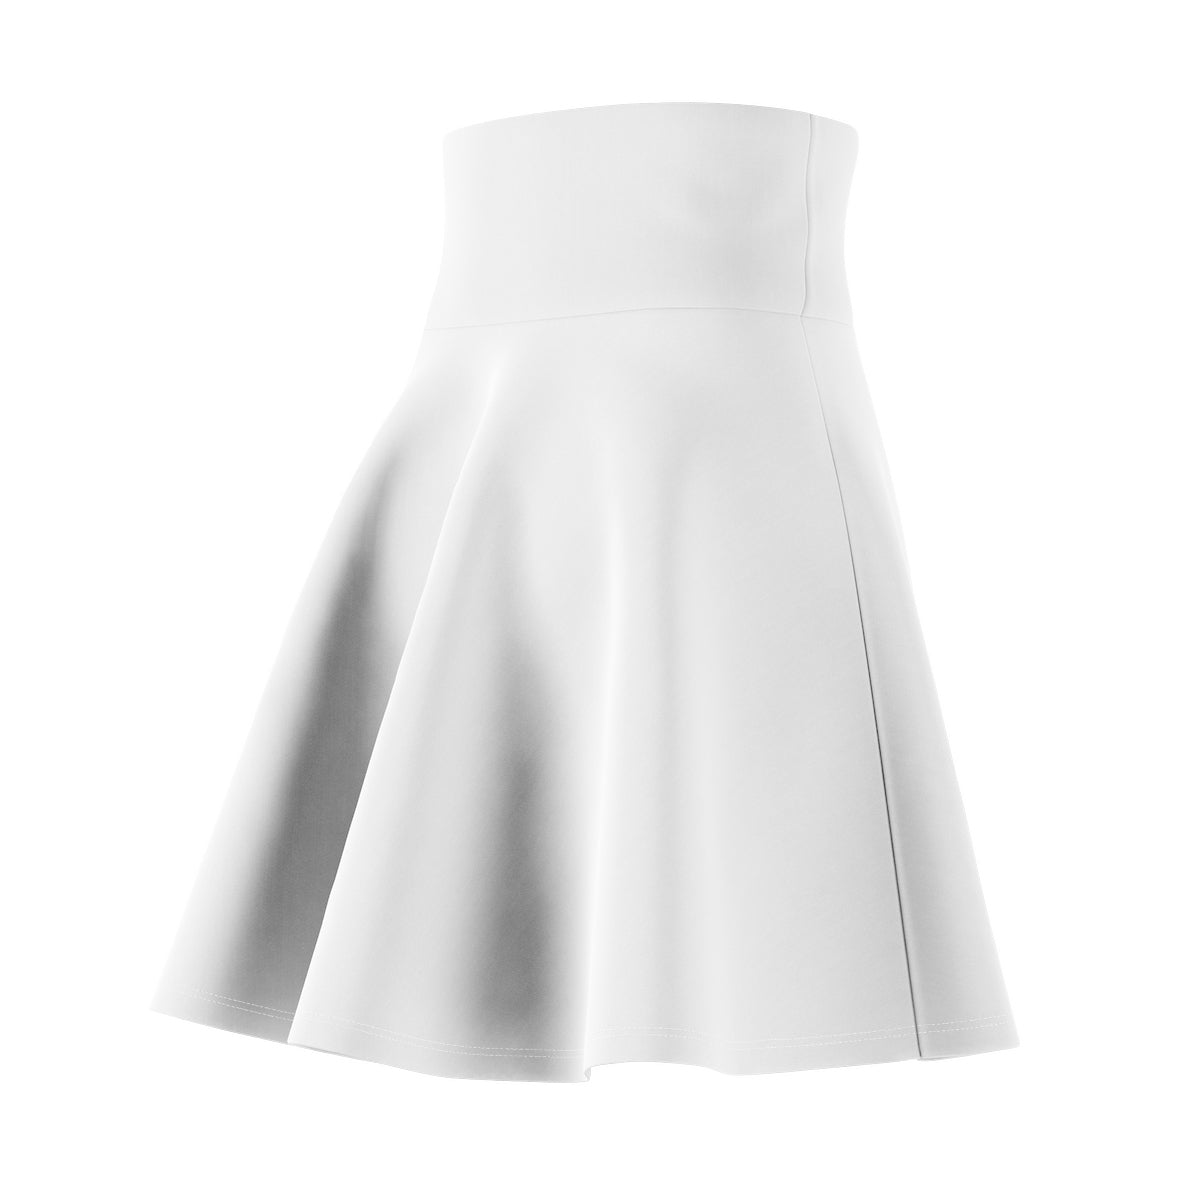 White Skater Skirt